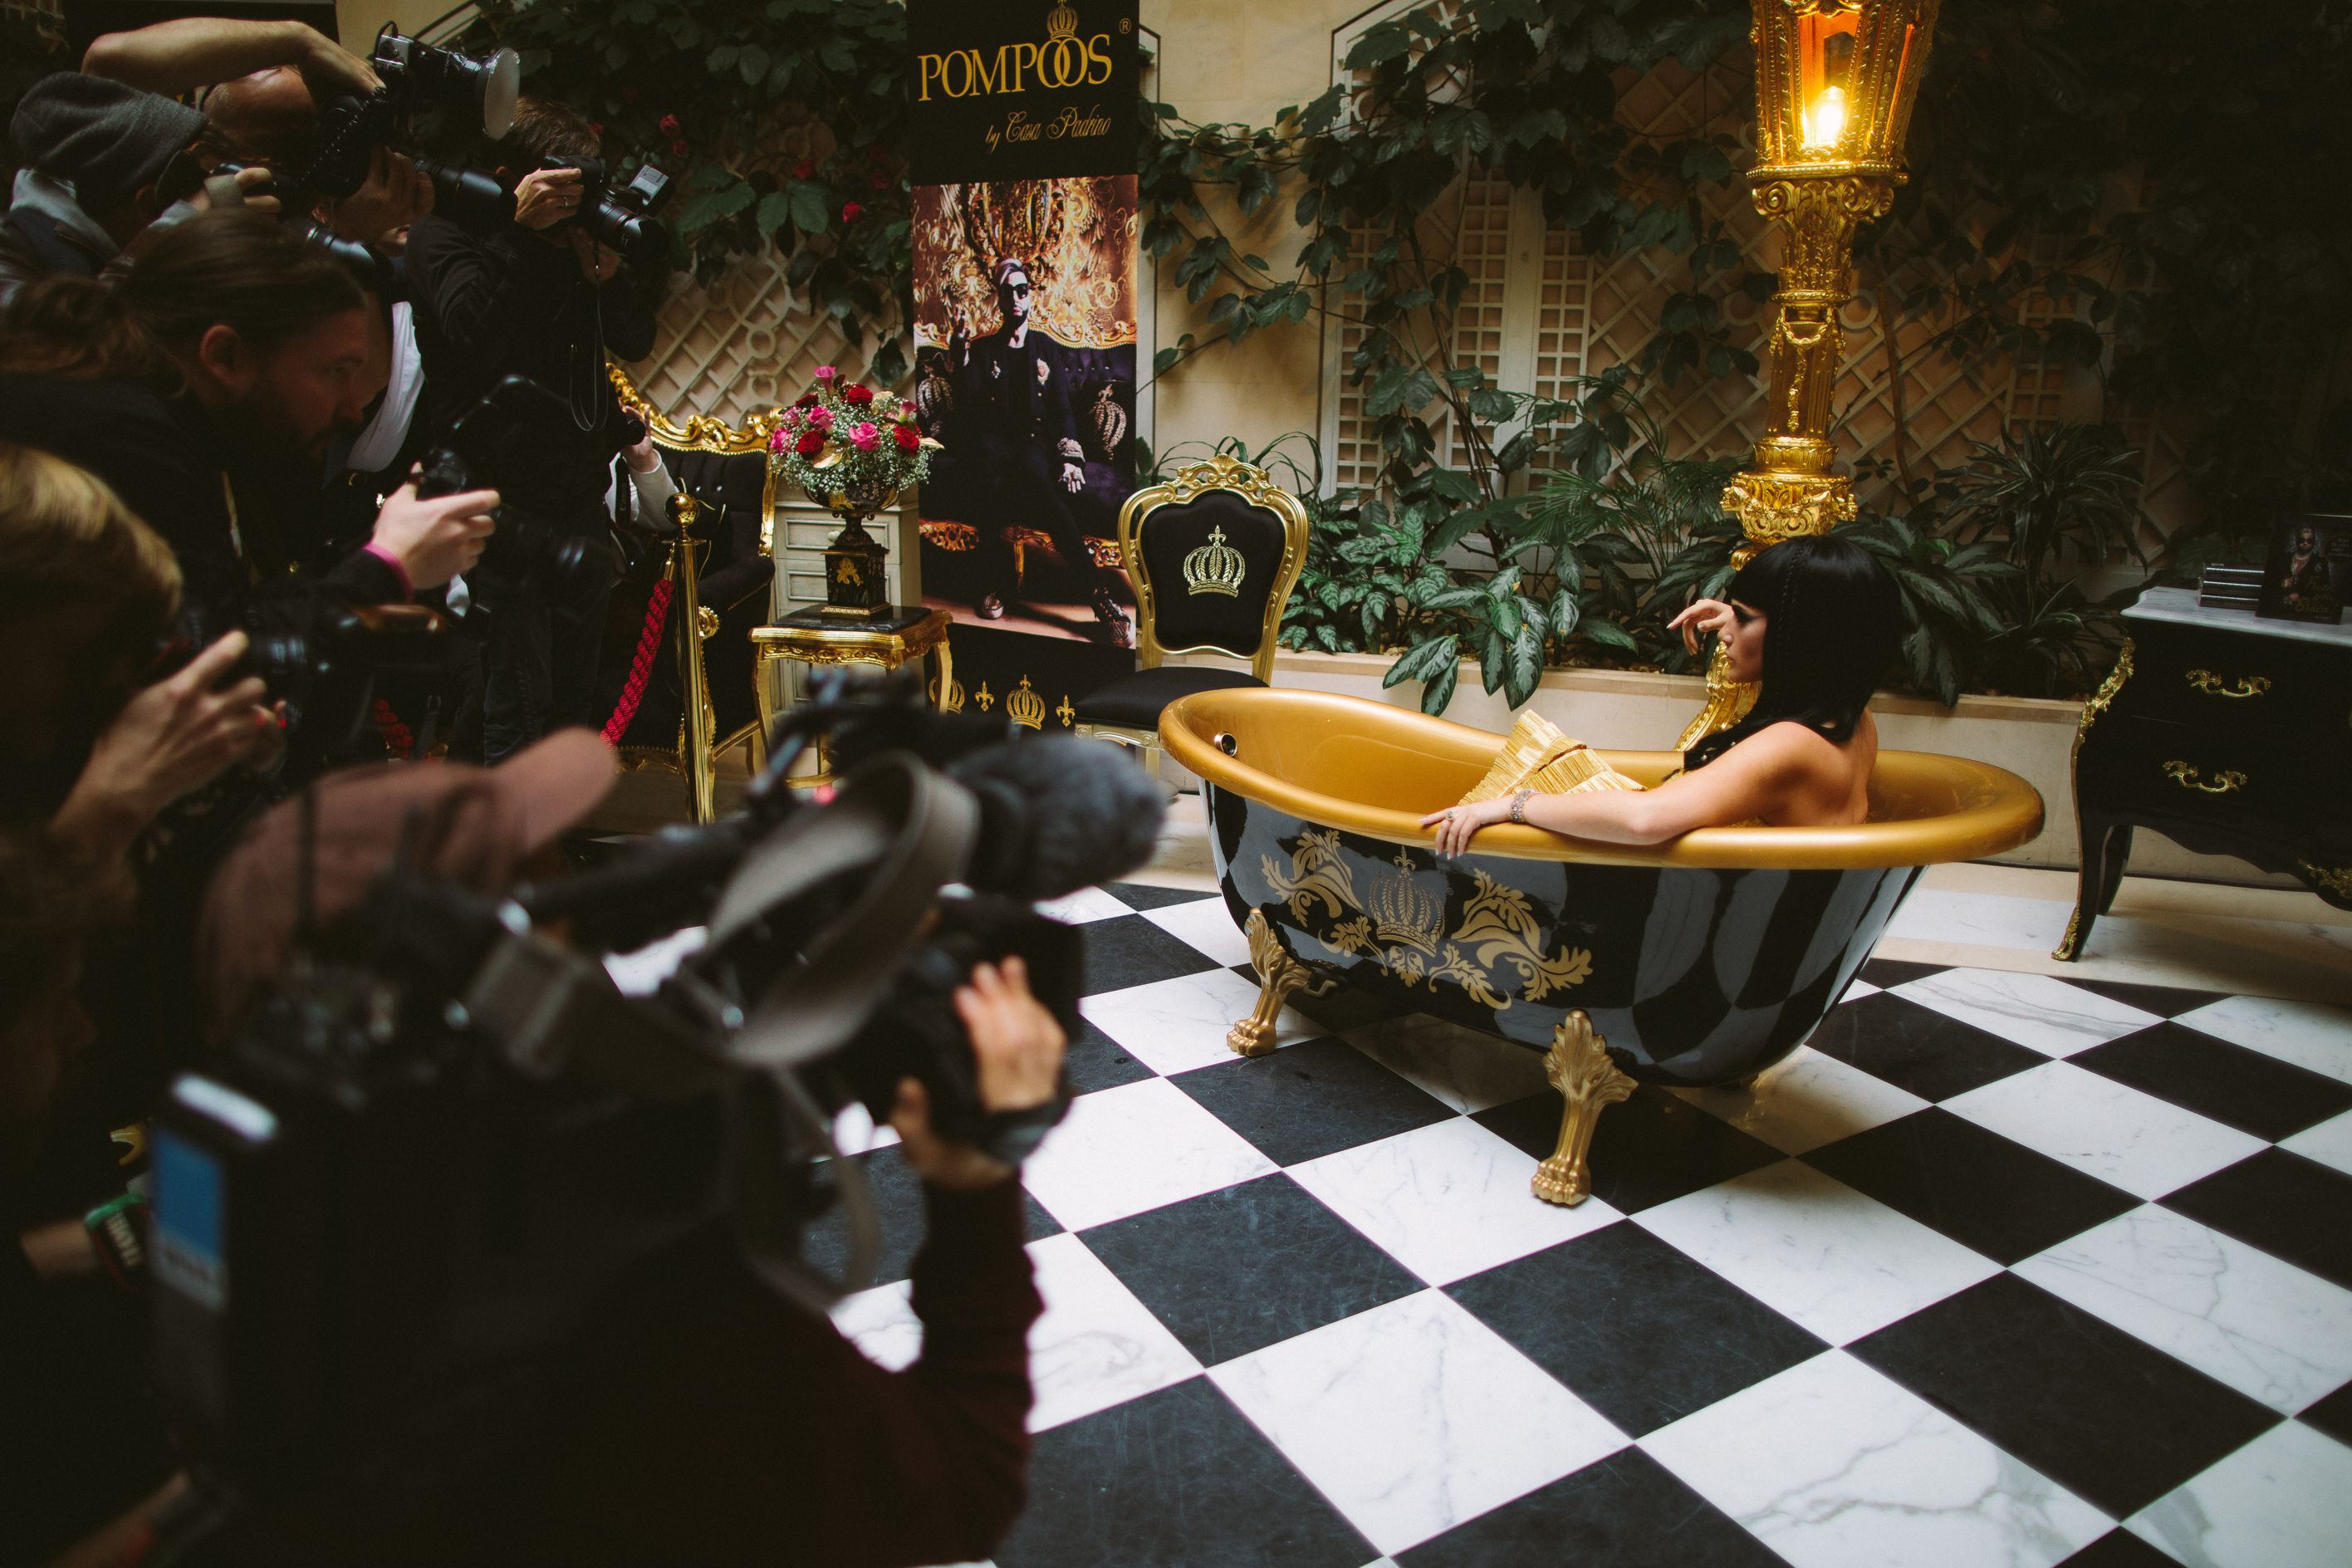 Goldene Pompöös by Casa Padrino Luxus Badewanne freistehend auf Löwenfüßen mit Model Sarah Knappik als Cleopatra inszeniert von Star Designer Harald Glööckler